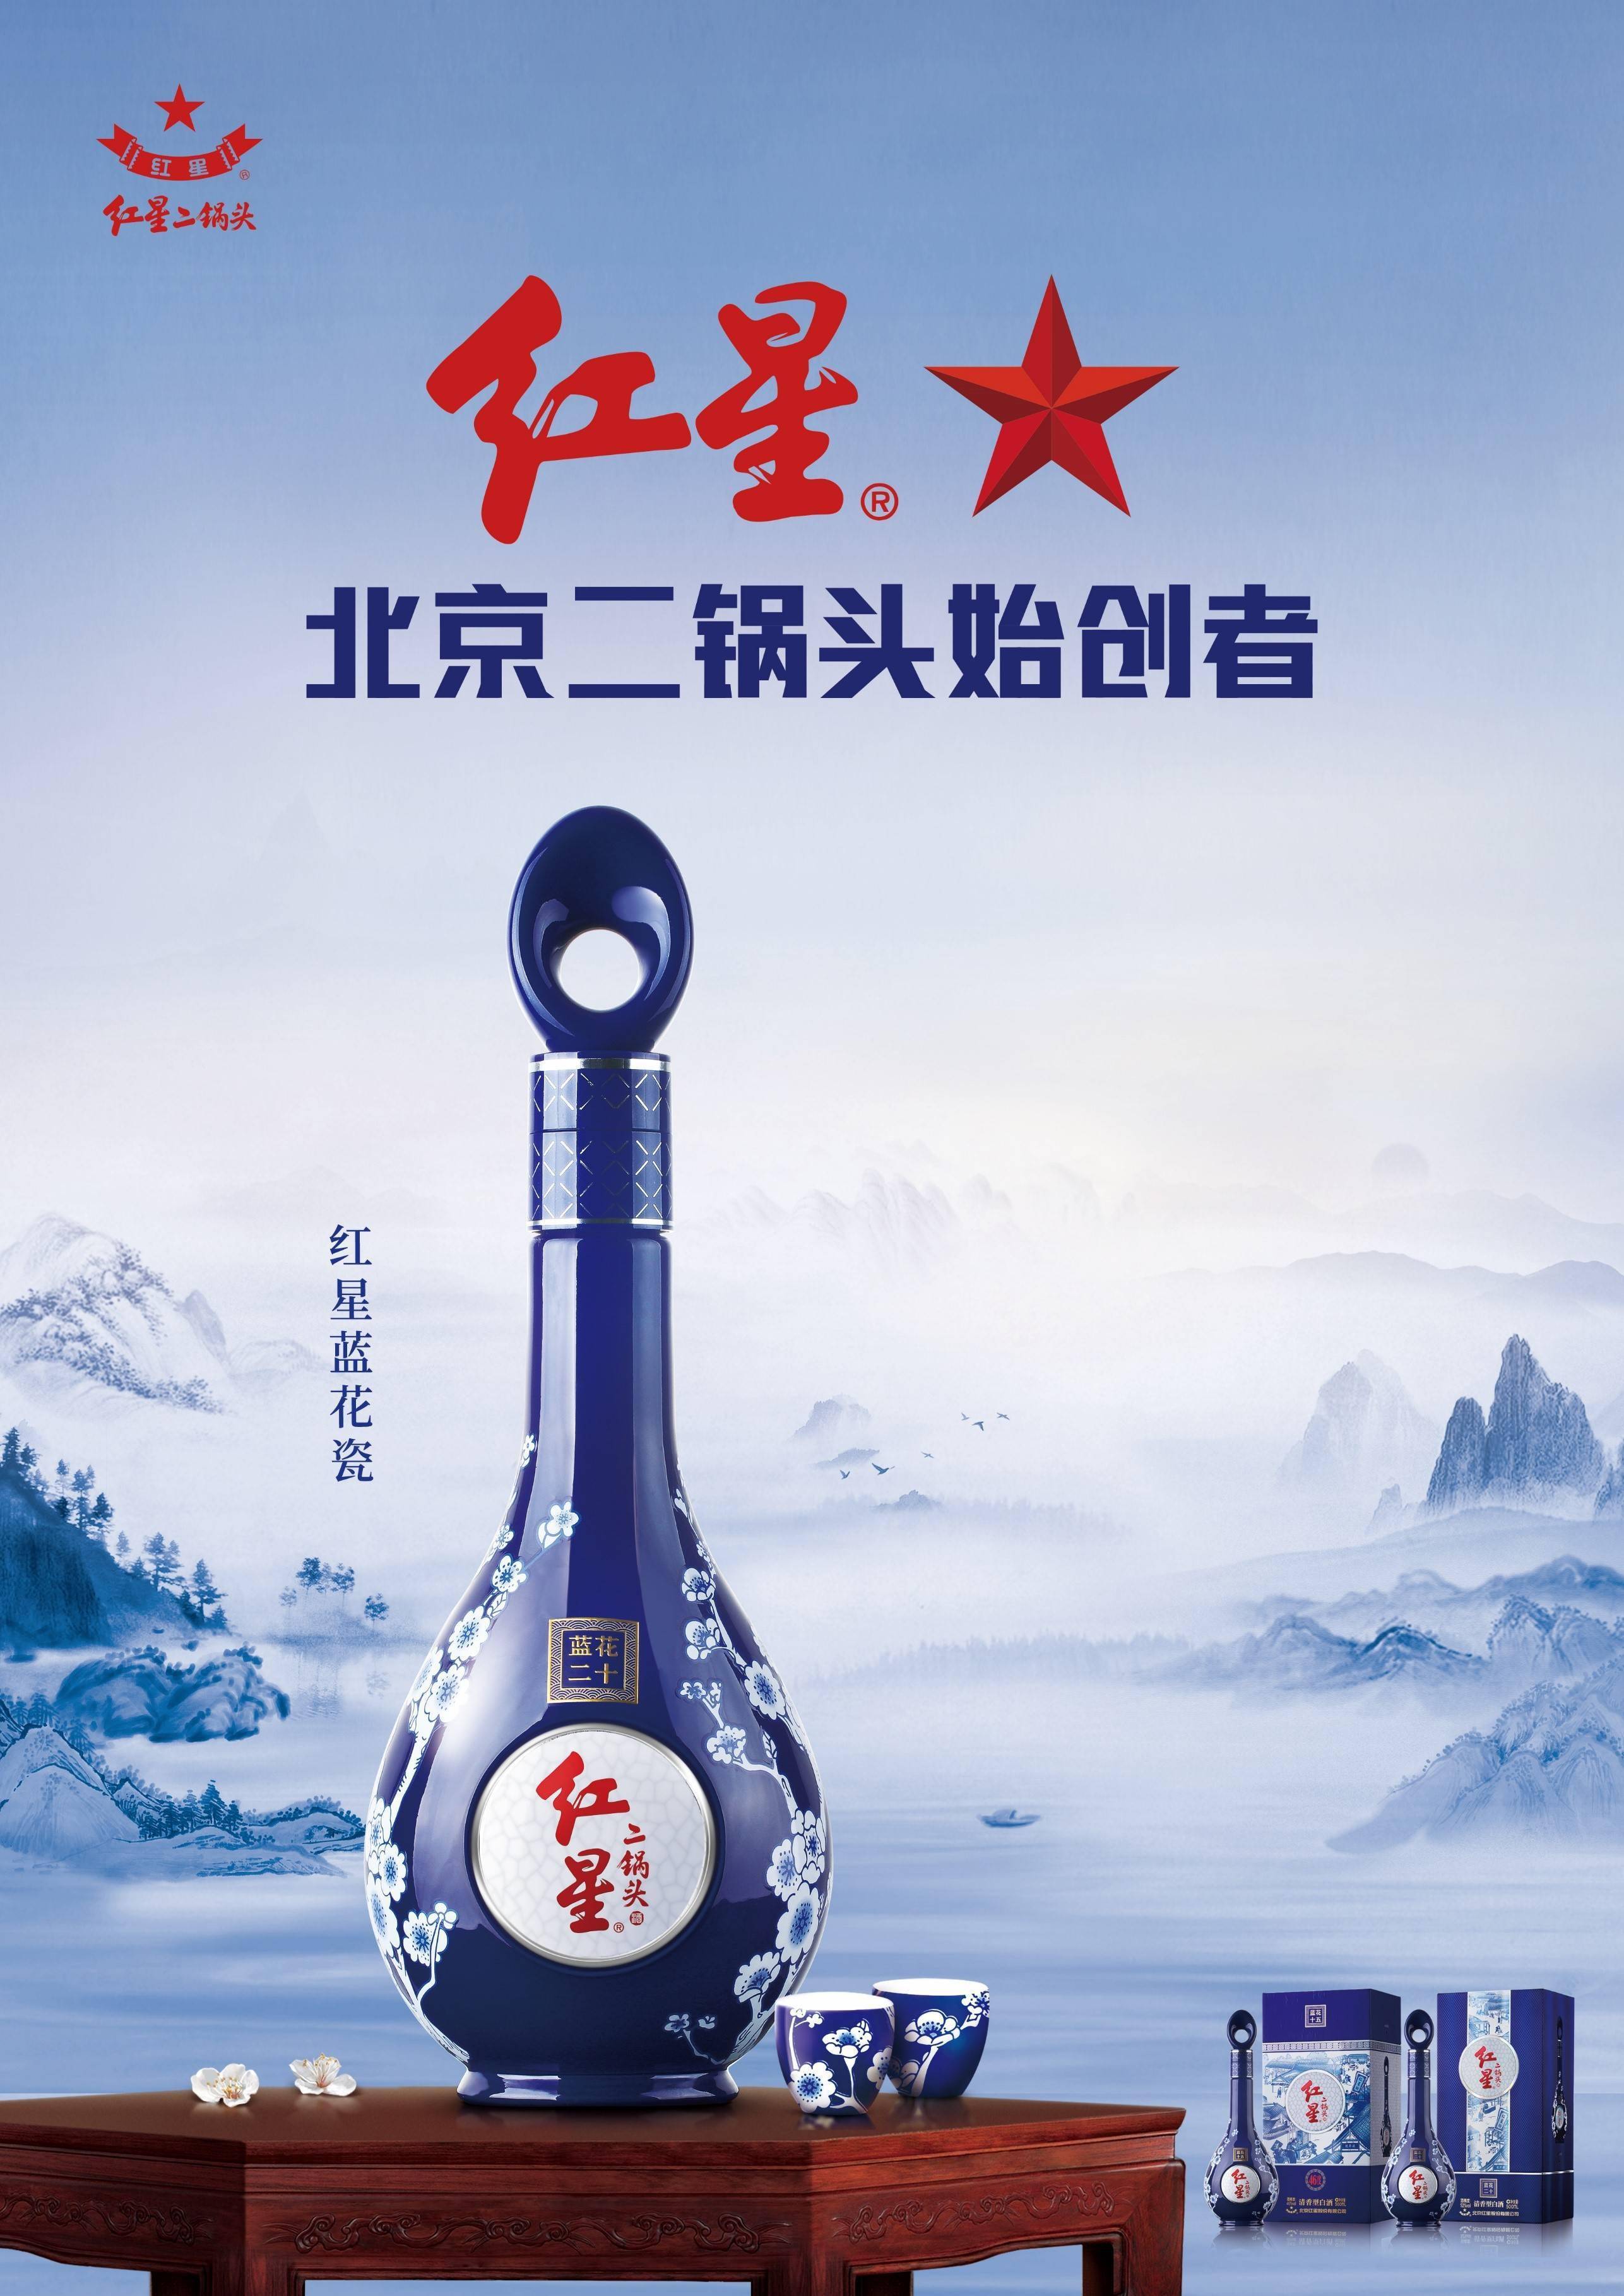 中国梦酒52度价格表图片